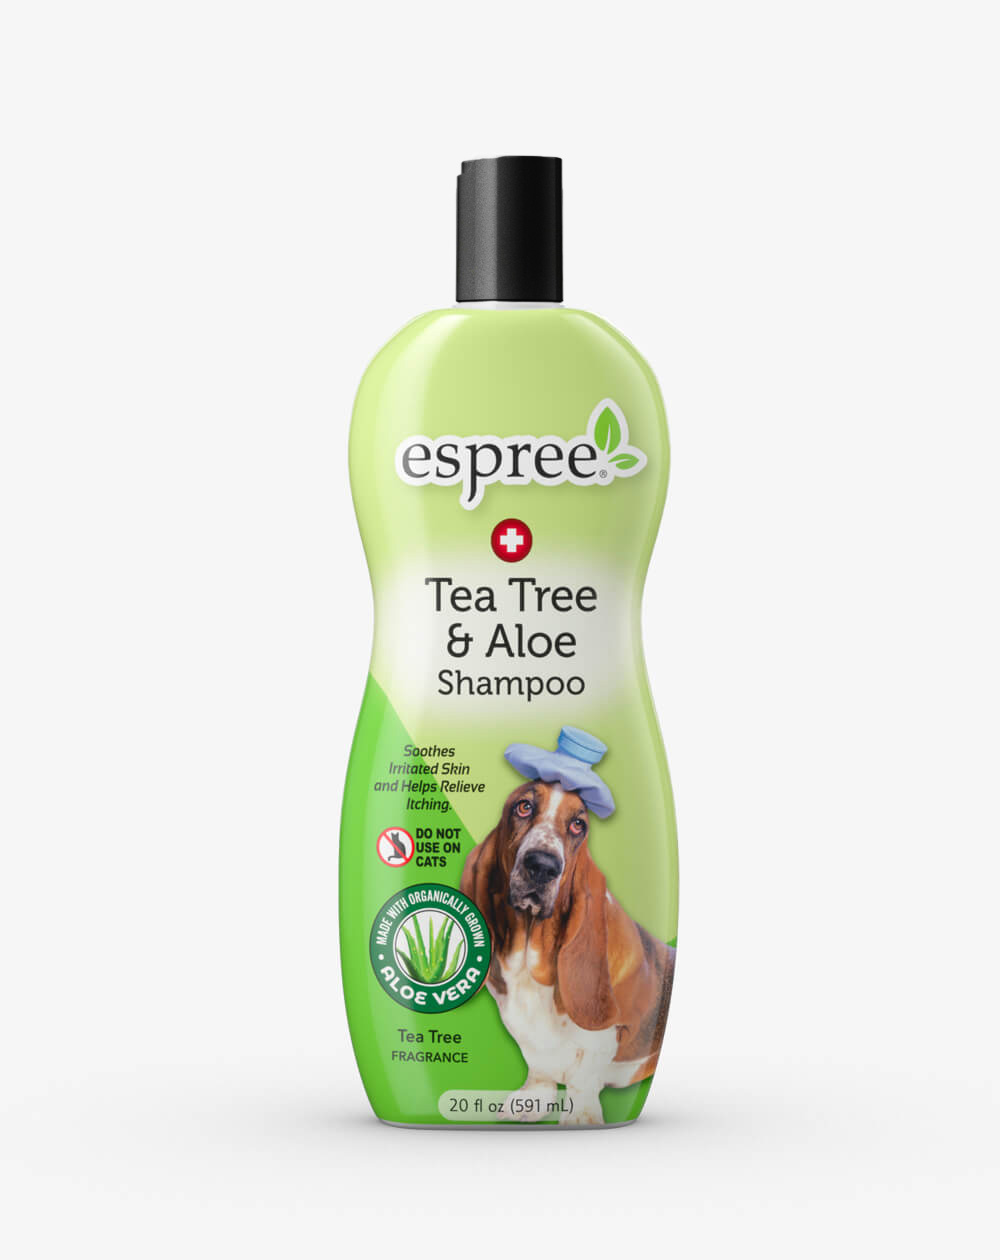 Photos - Pet Clipper Espree Шампунь з олією чайного дерева і алое вера для собак  Tea Tree & Alo 